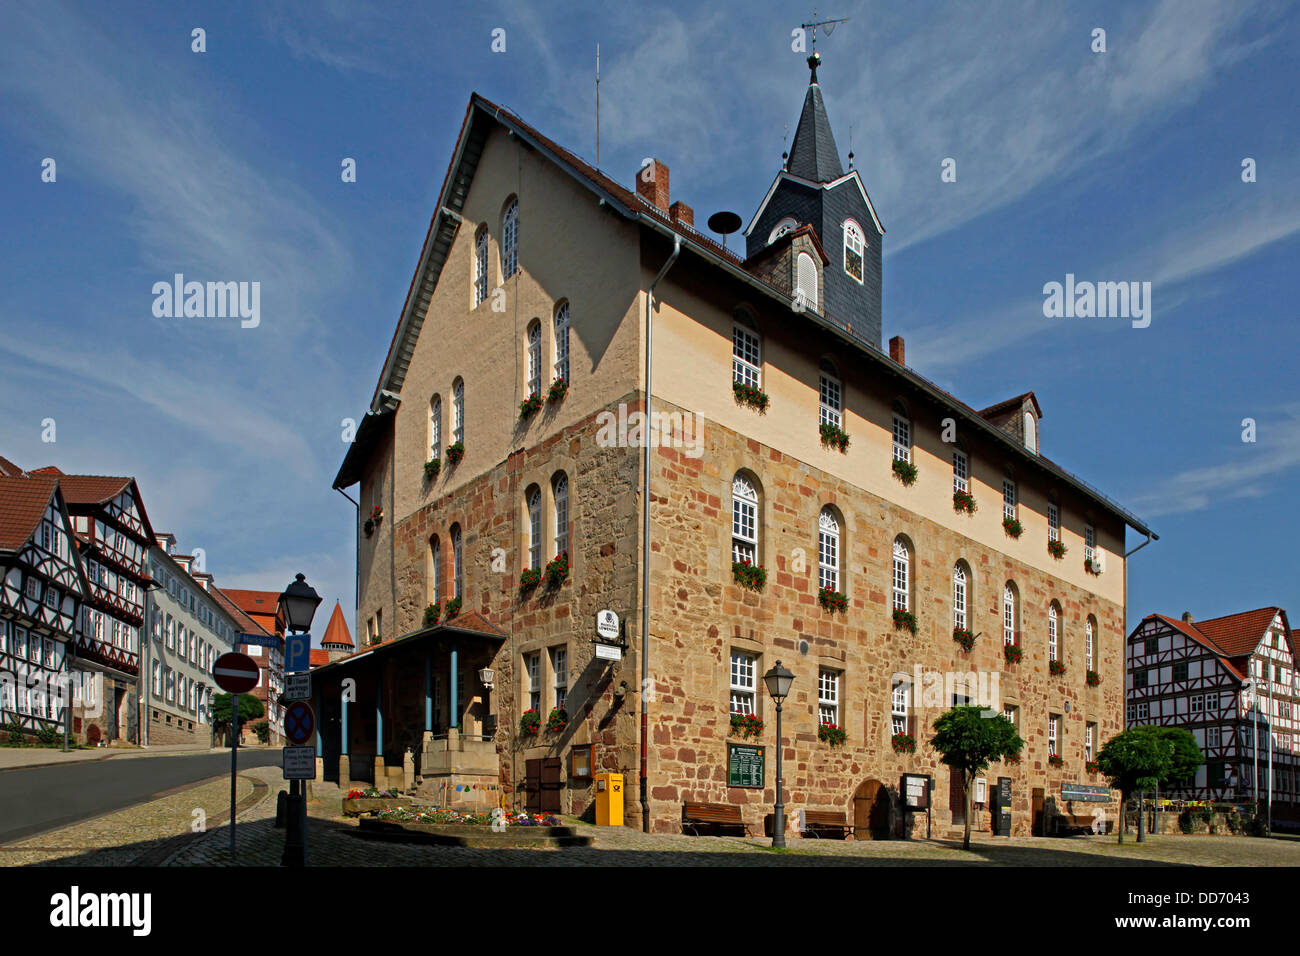 Die Stadt ist am besten von allen für seine Schloss Spangenberg, ein Schloss, gebaut im Jahre 1253 und Wahrzeichen der Stadt bekannt. Ebenfalls sehenswert sind das Rathaus und die Fachwerkbauten in der Altstadt und die Reste der alten Stadtmauer, einige von deren Türme ein Stockfoto